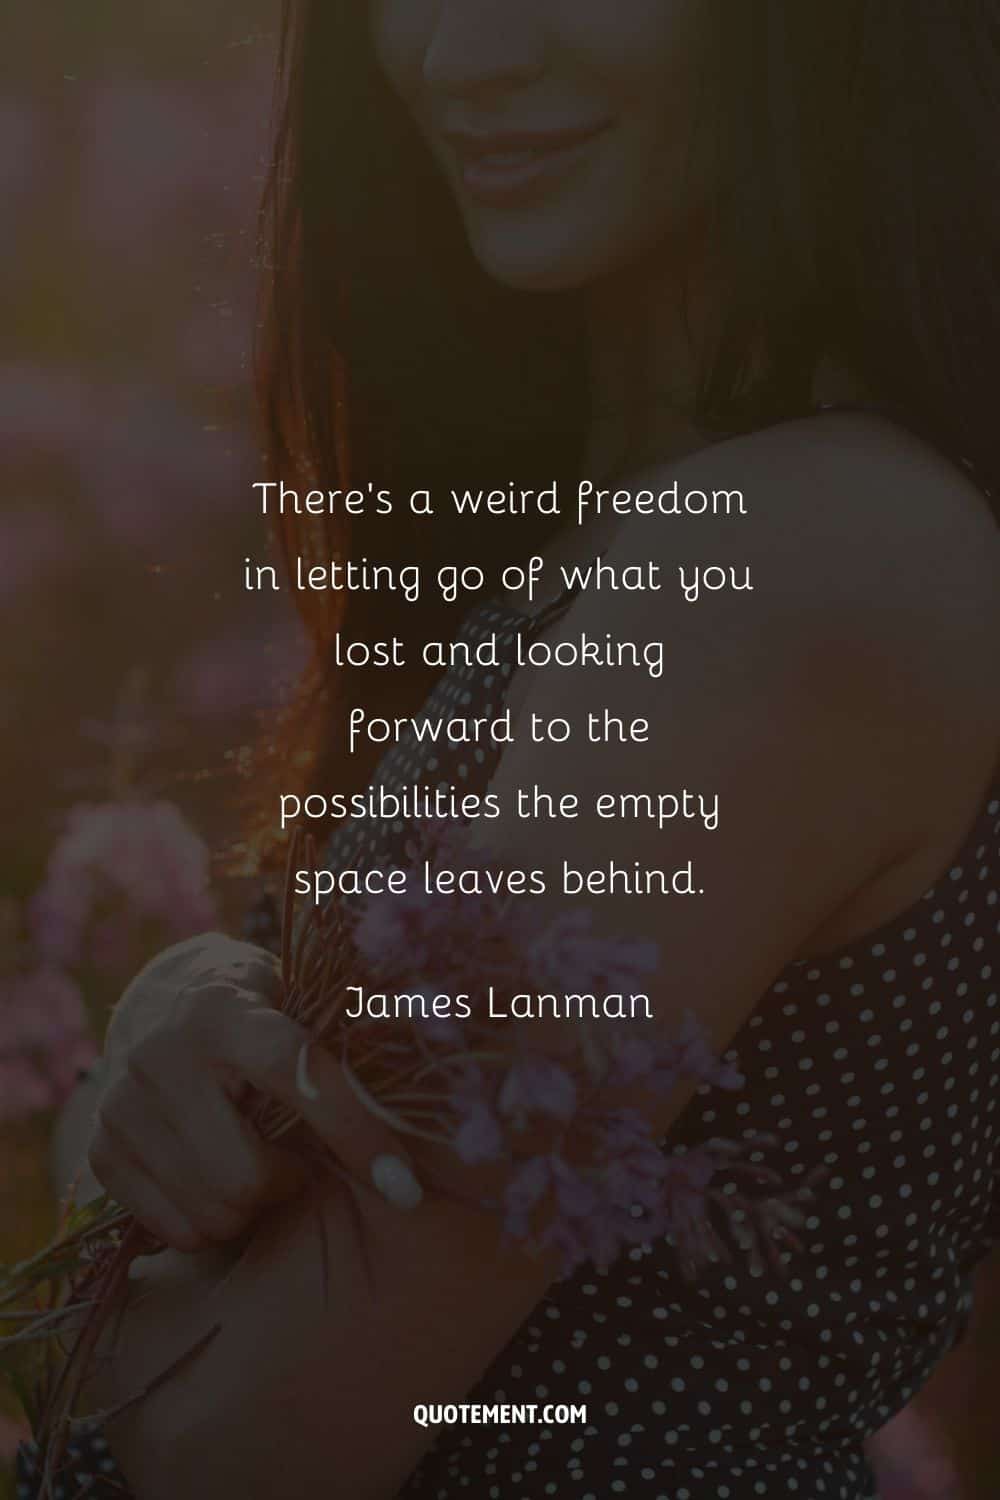 "Hay una extraña libertad en dejar ir lo que has perdido y mirar con ilusión las posibilidades que deja el espacio vacío". - James Lanman